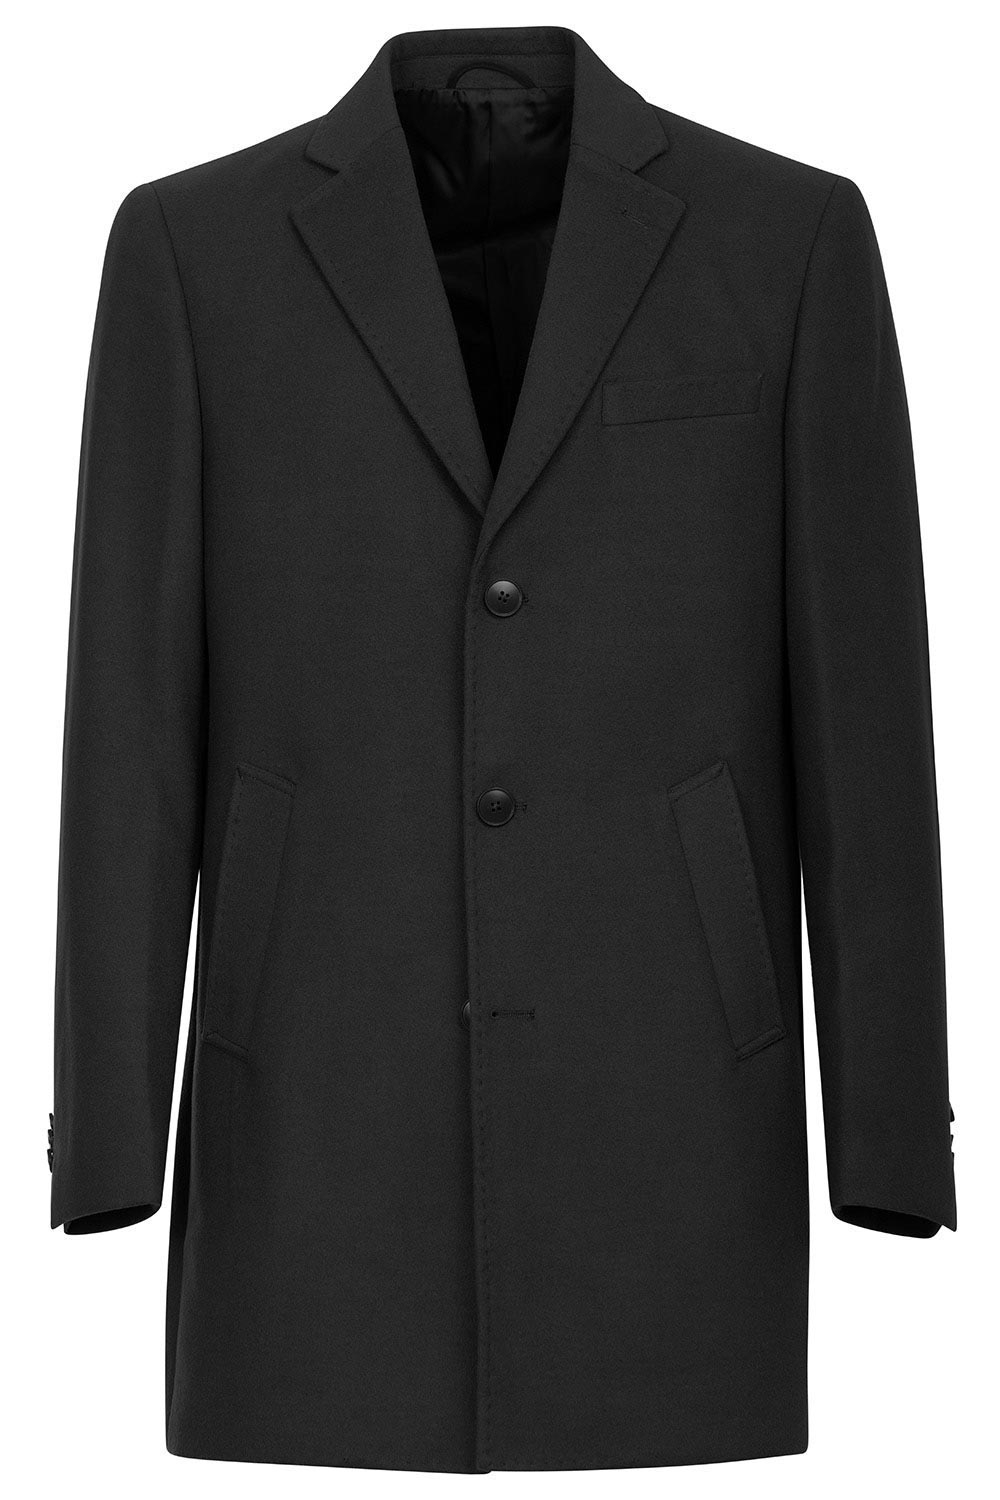 Palton negru uni 1